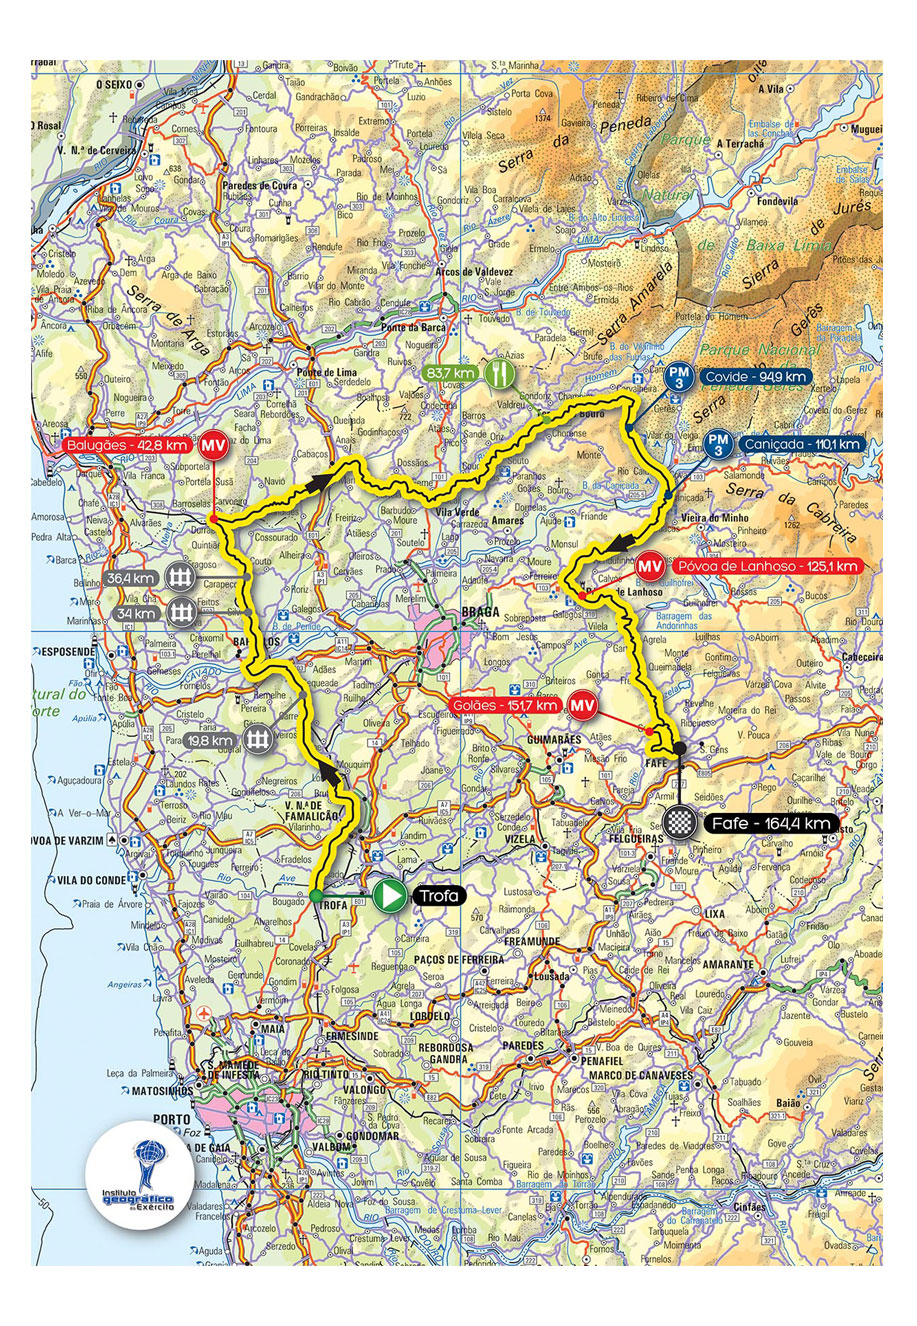 Streckenverlauf Volta a Portugal em Bicicleta Liberty Seguros 2013 - Etappe 3